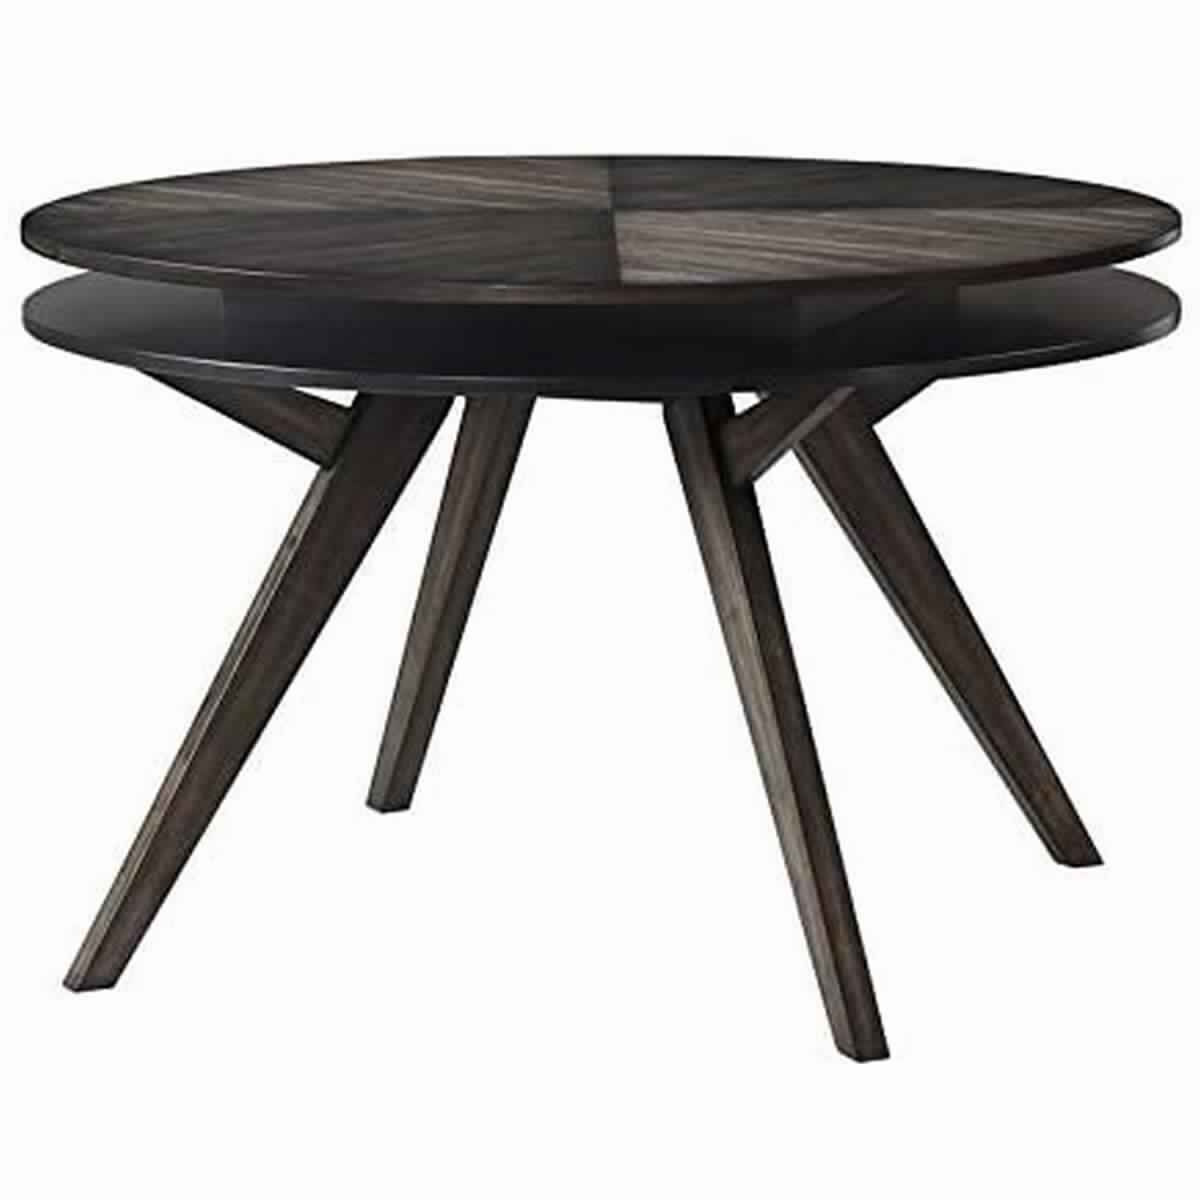 Round Wooden Dining Table with Storage Shelf, Dark Brown